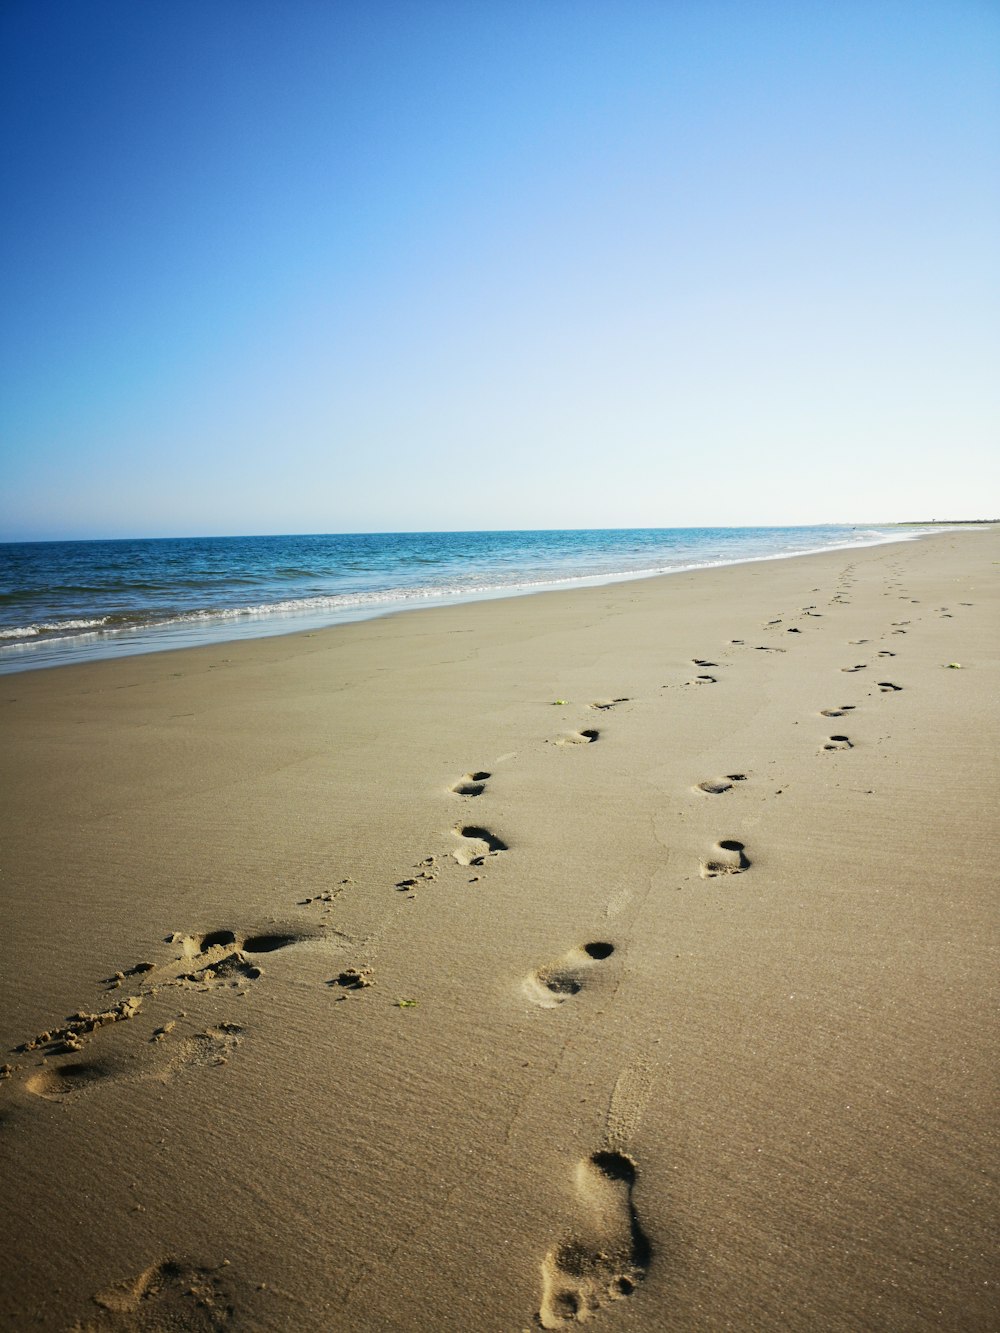 footprints in asnd